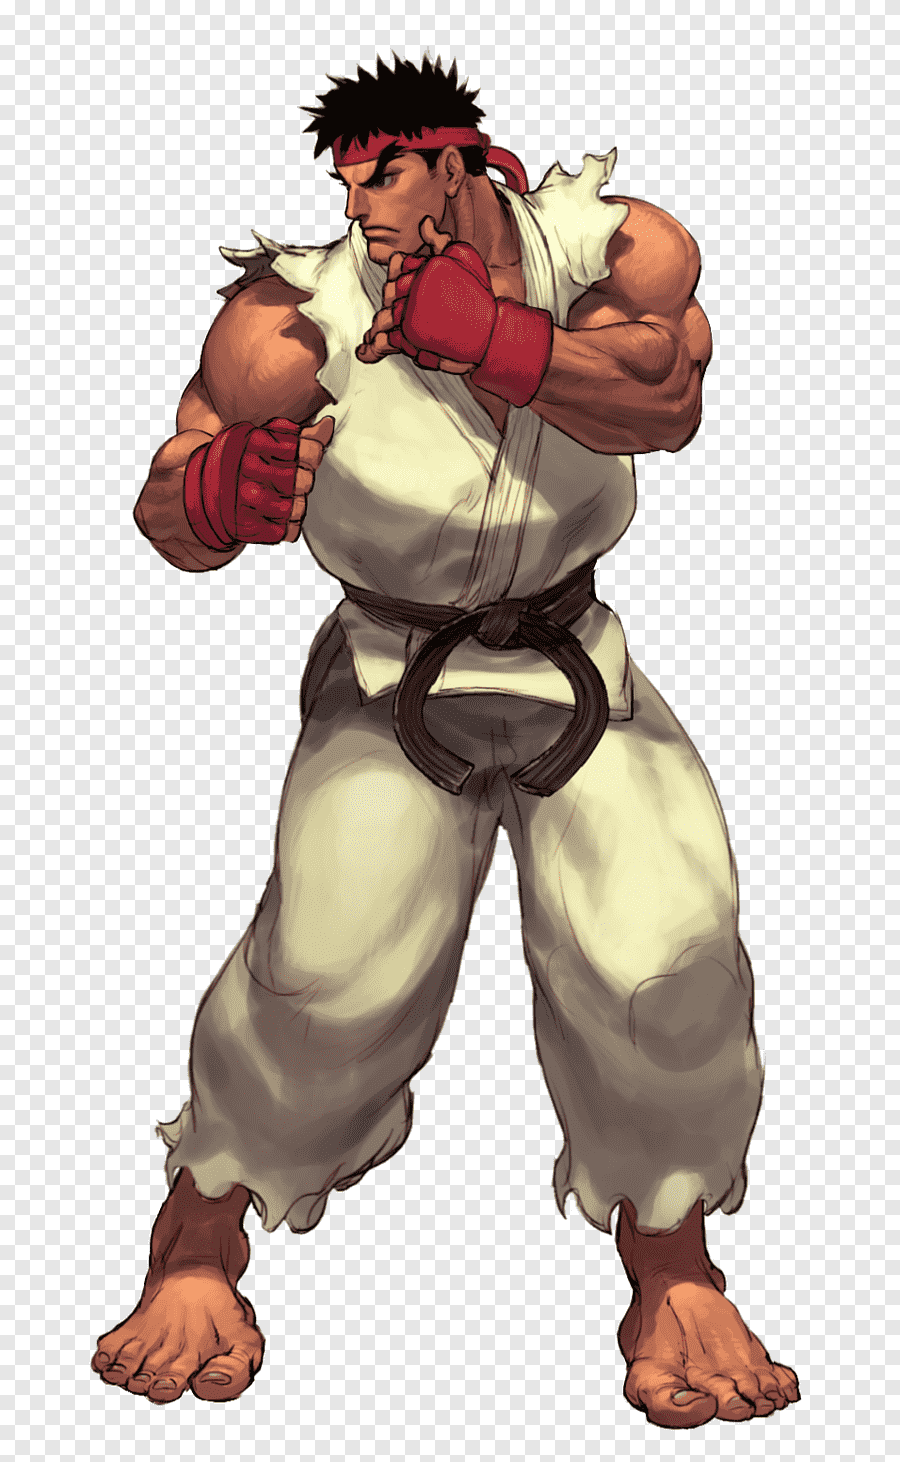 Le personnage de Street Fighter Ryu dans un kimono blanc